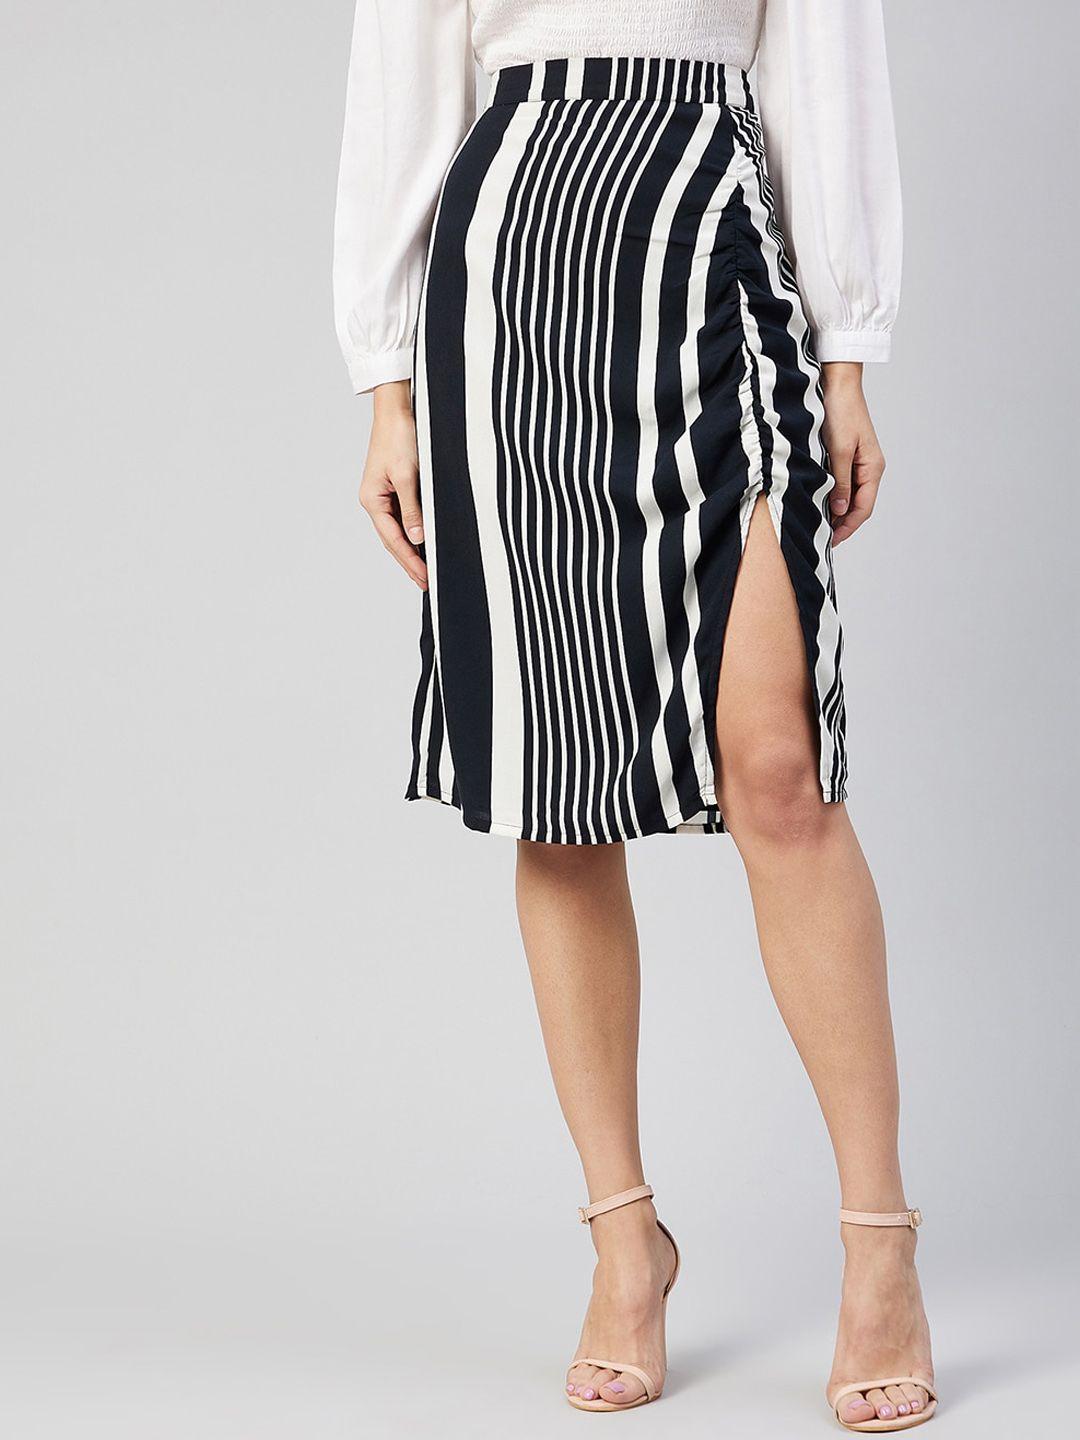 carlton-london-women-black-&-white-striped-straight-knee-length-skirt